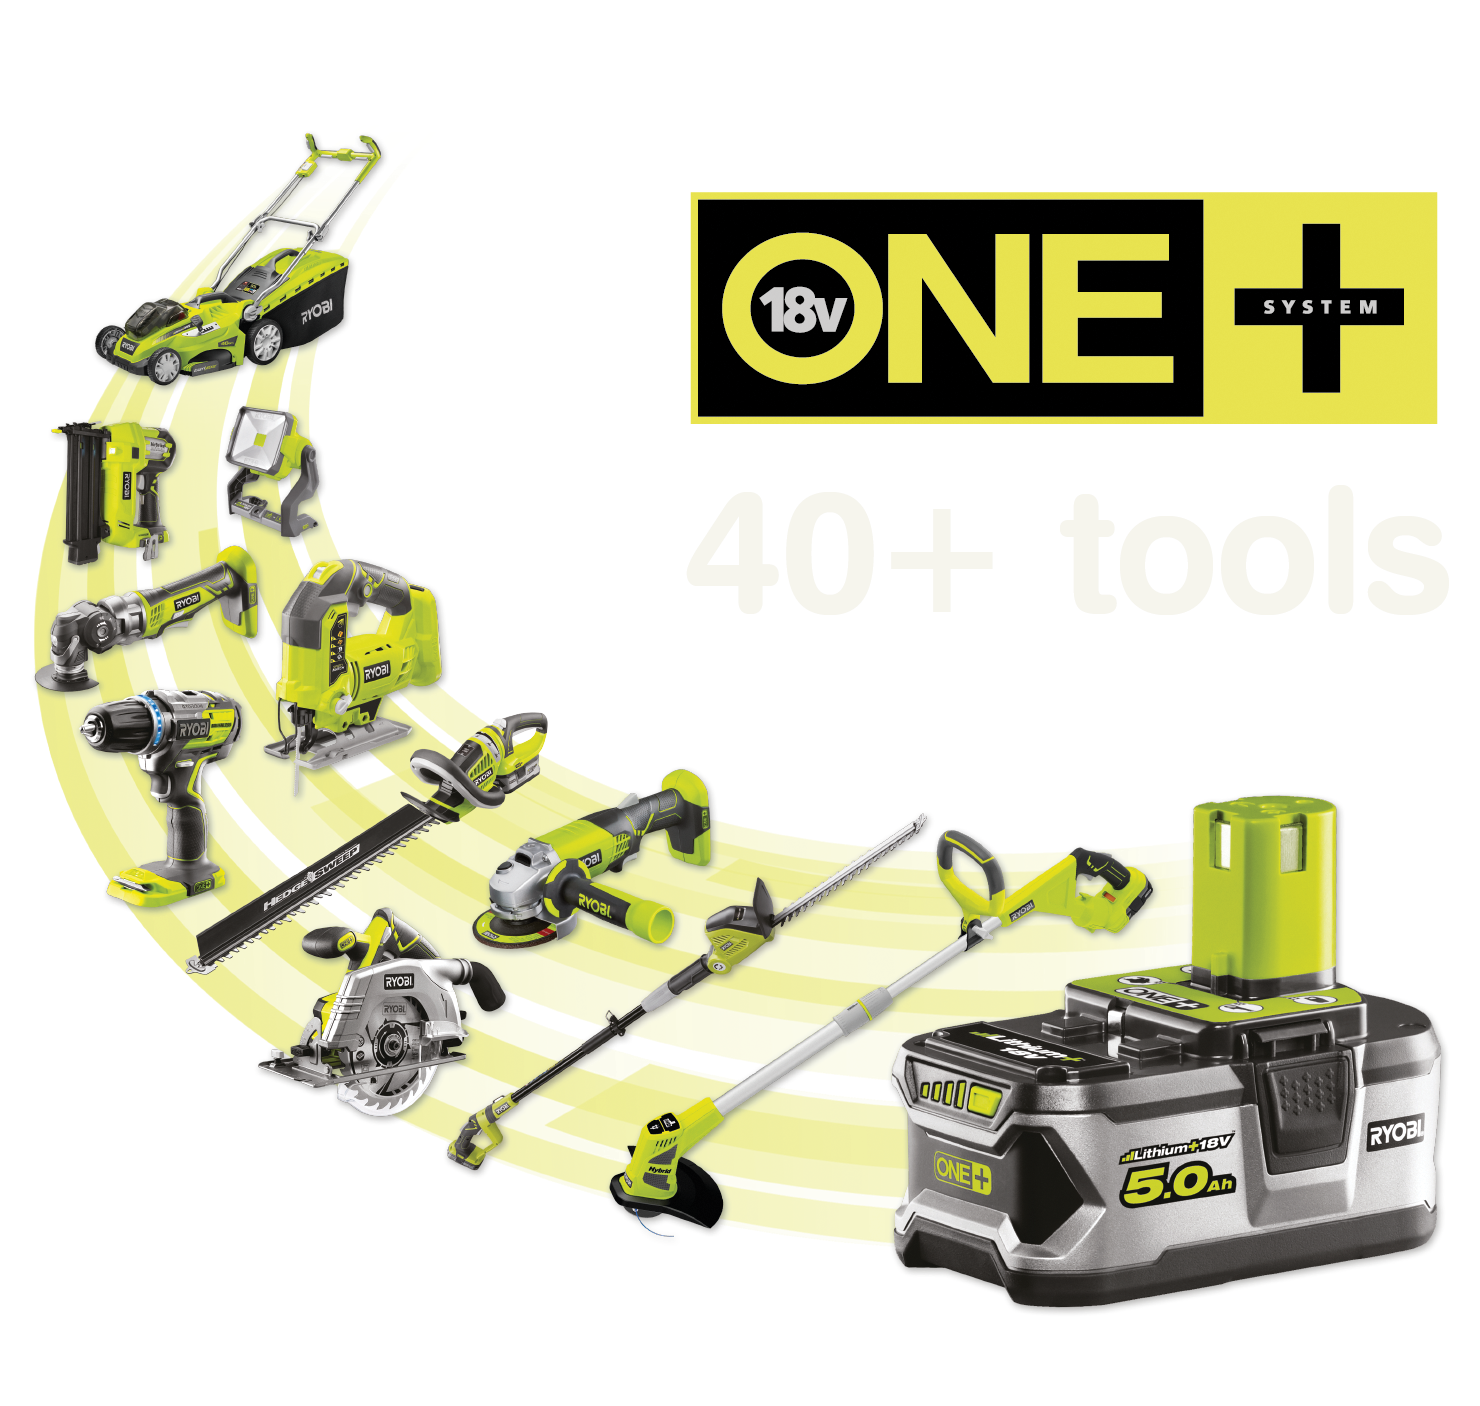 Yli 40+ työkalua, jotka saavat virtansa samasta ONE+™-akusta